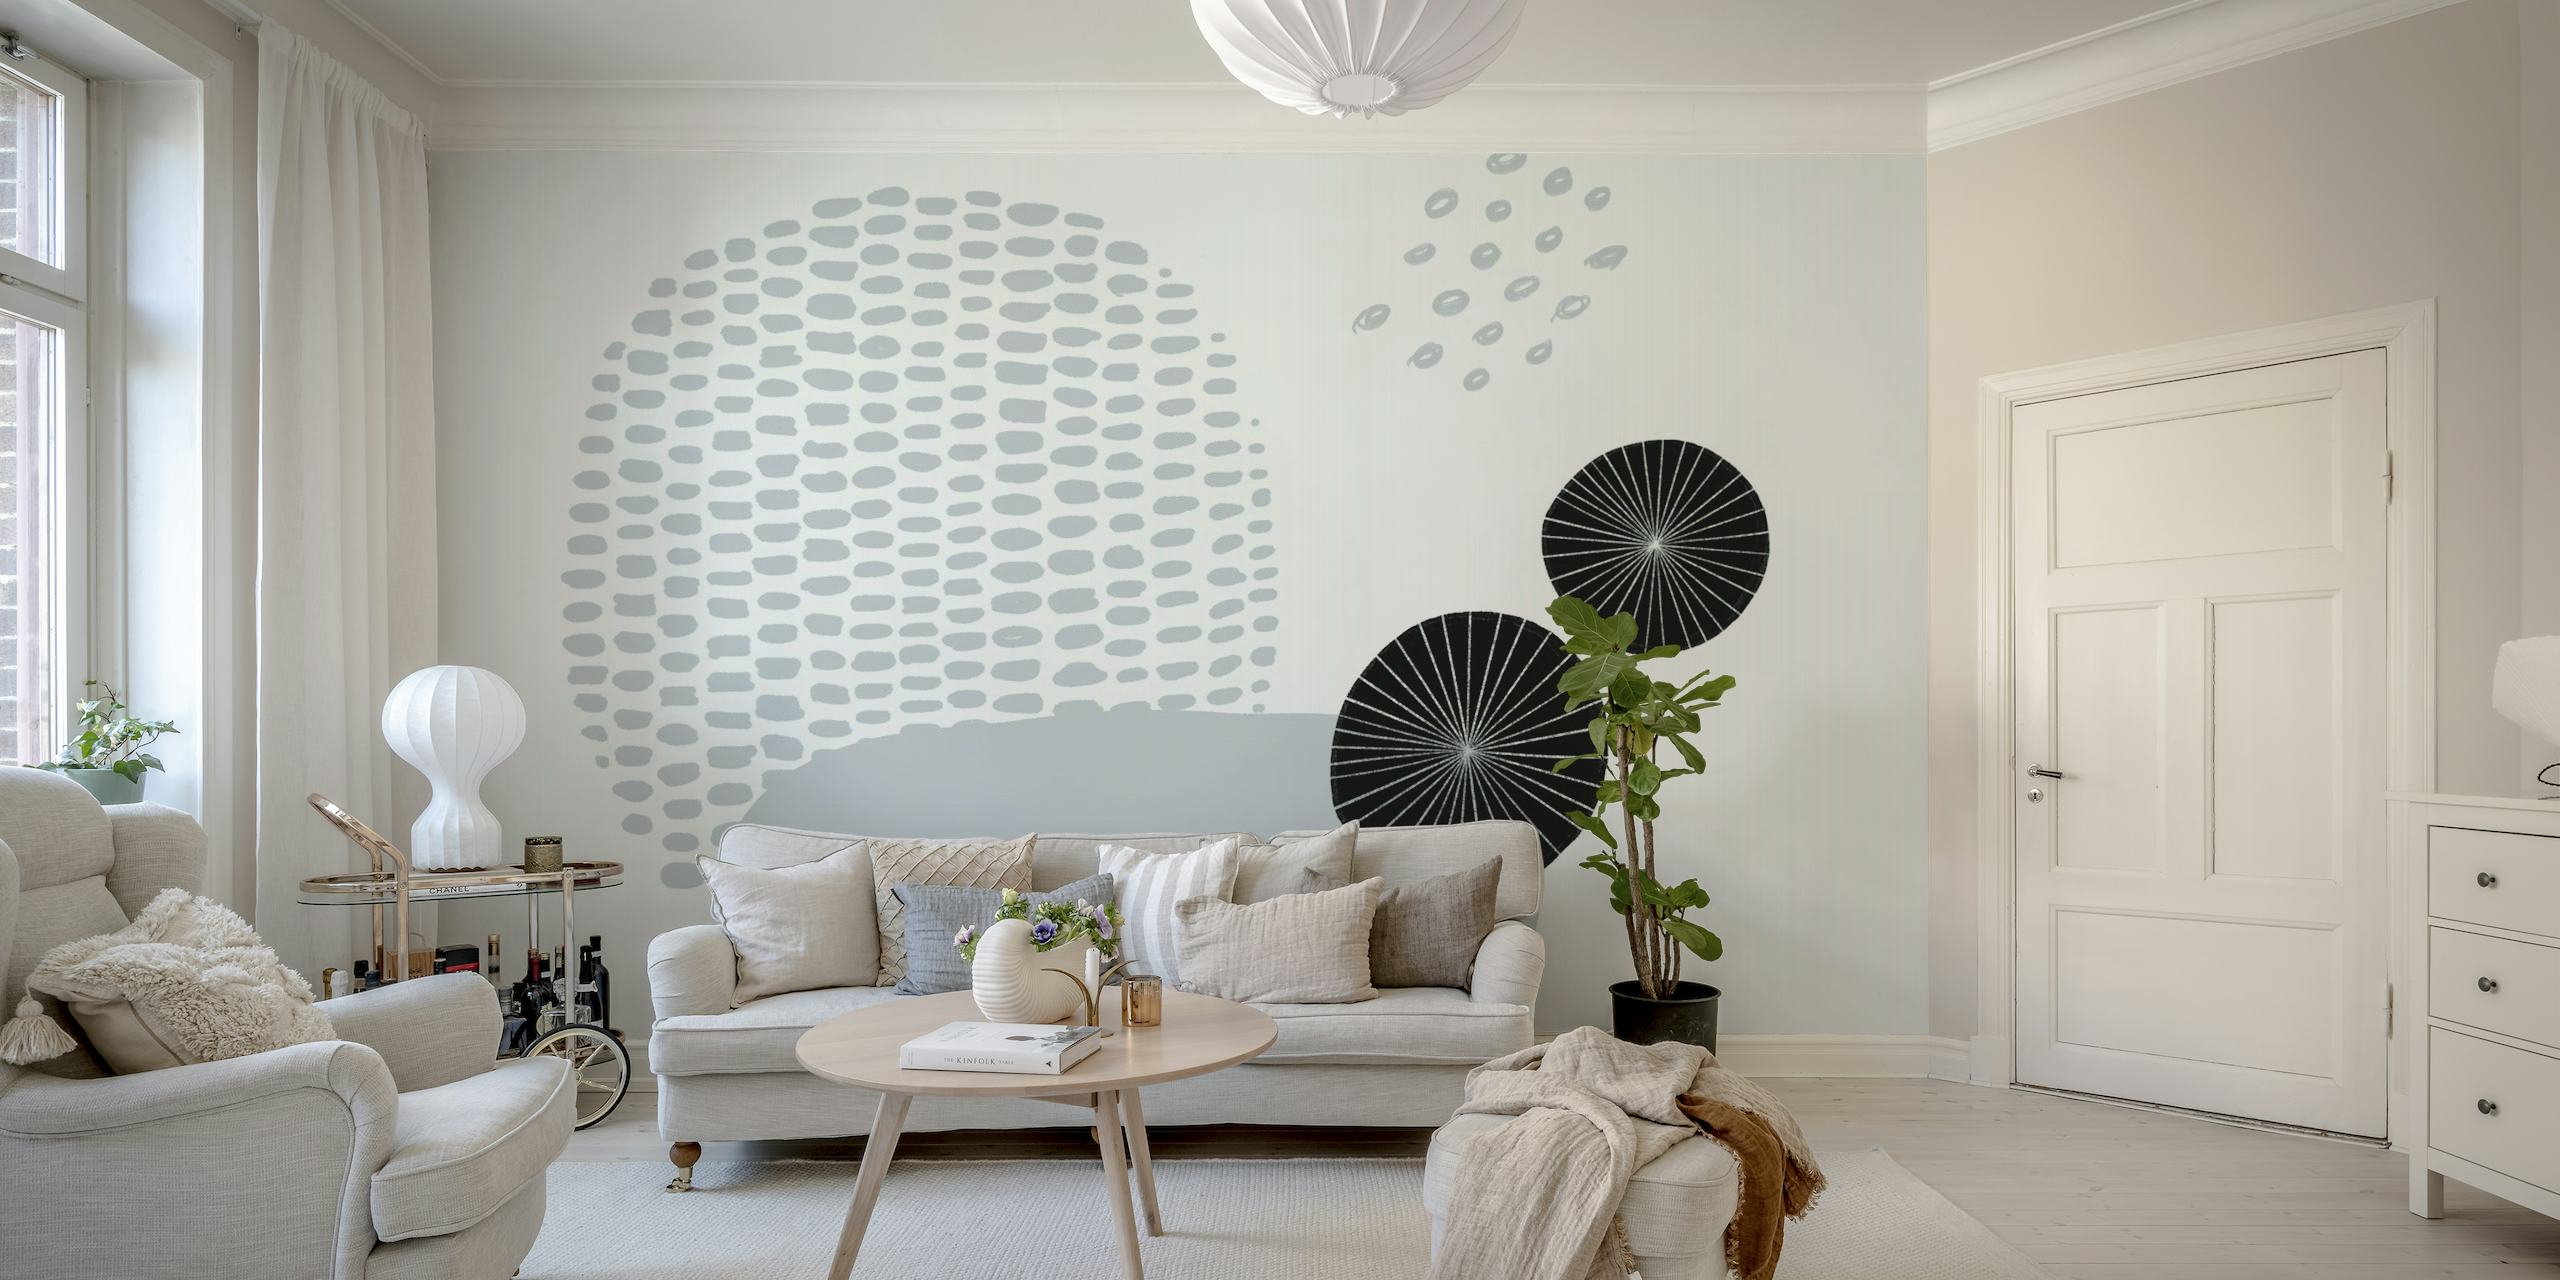 Mural de parede abstrato em tons de cinza com formas esféricas e padrões de pontos